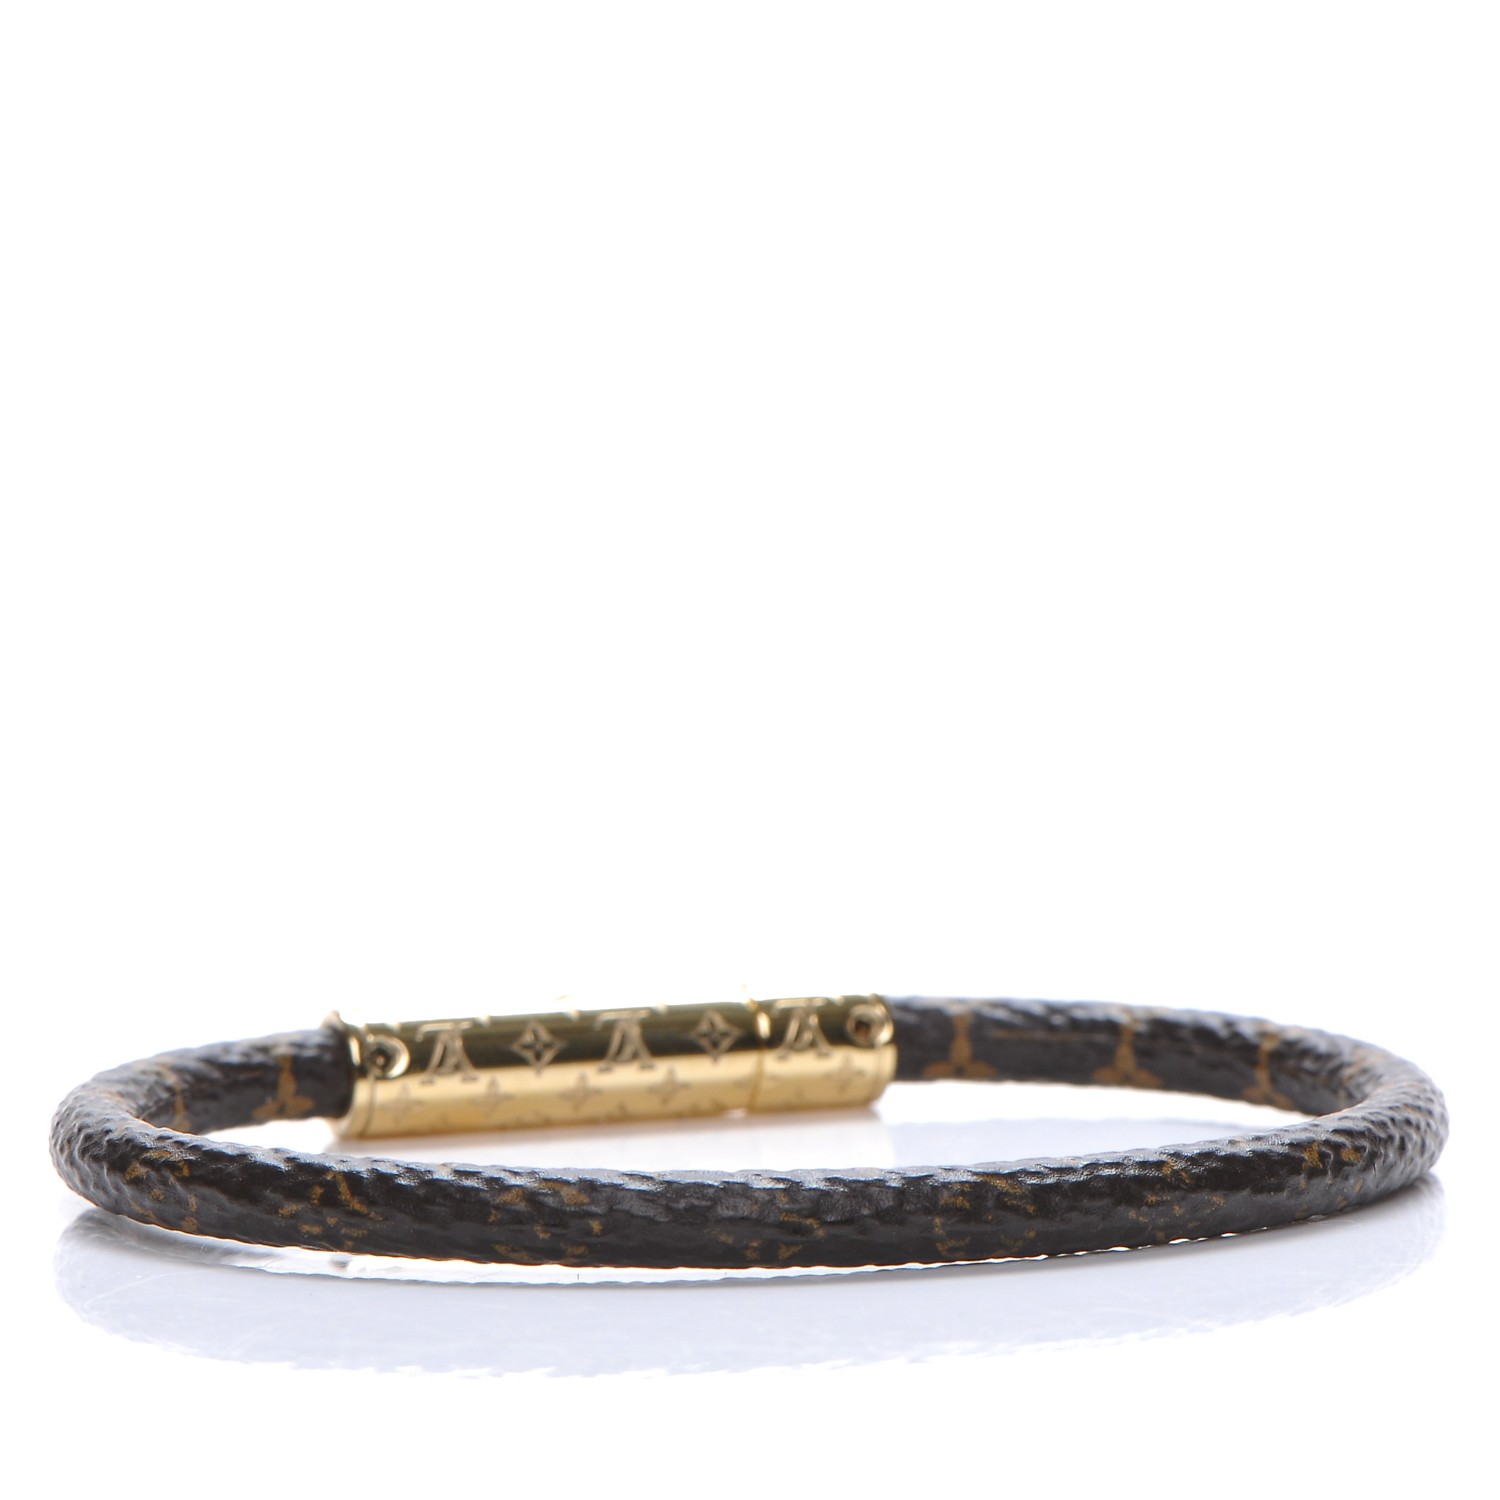 Louis Vuitton Daily Confidential Bracelet Black Monogram. Size 17